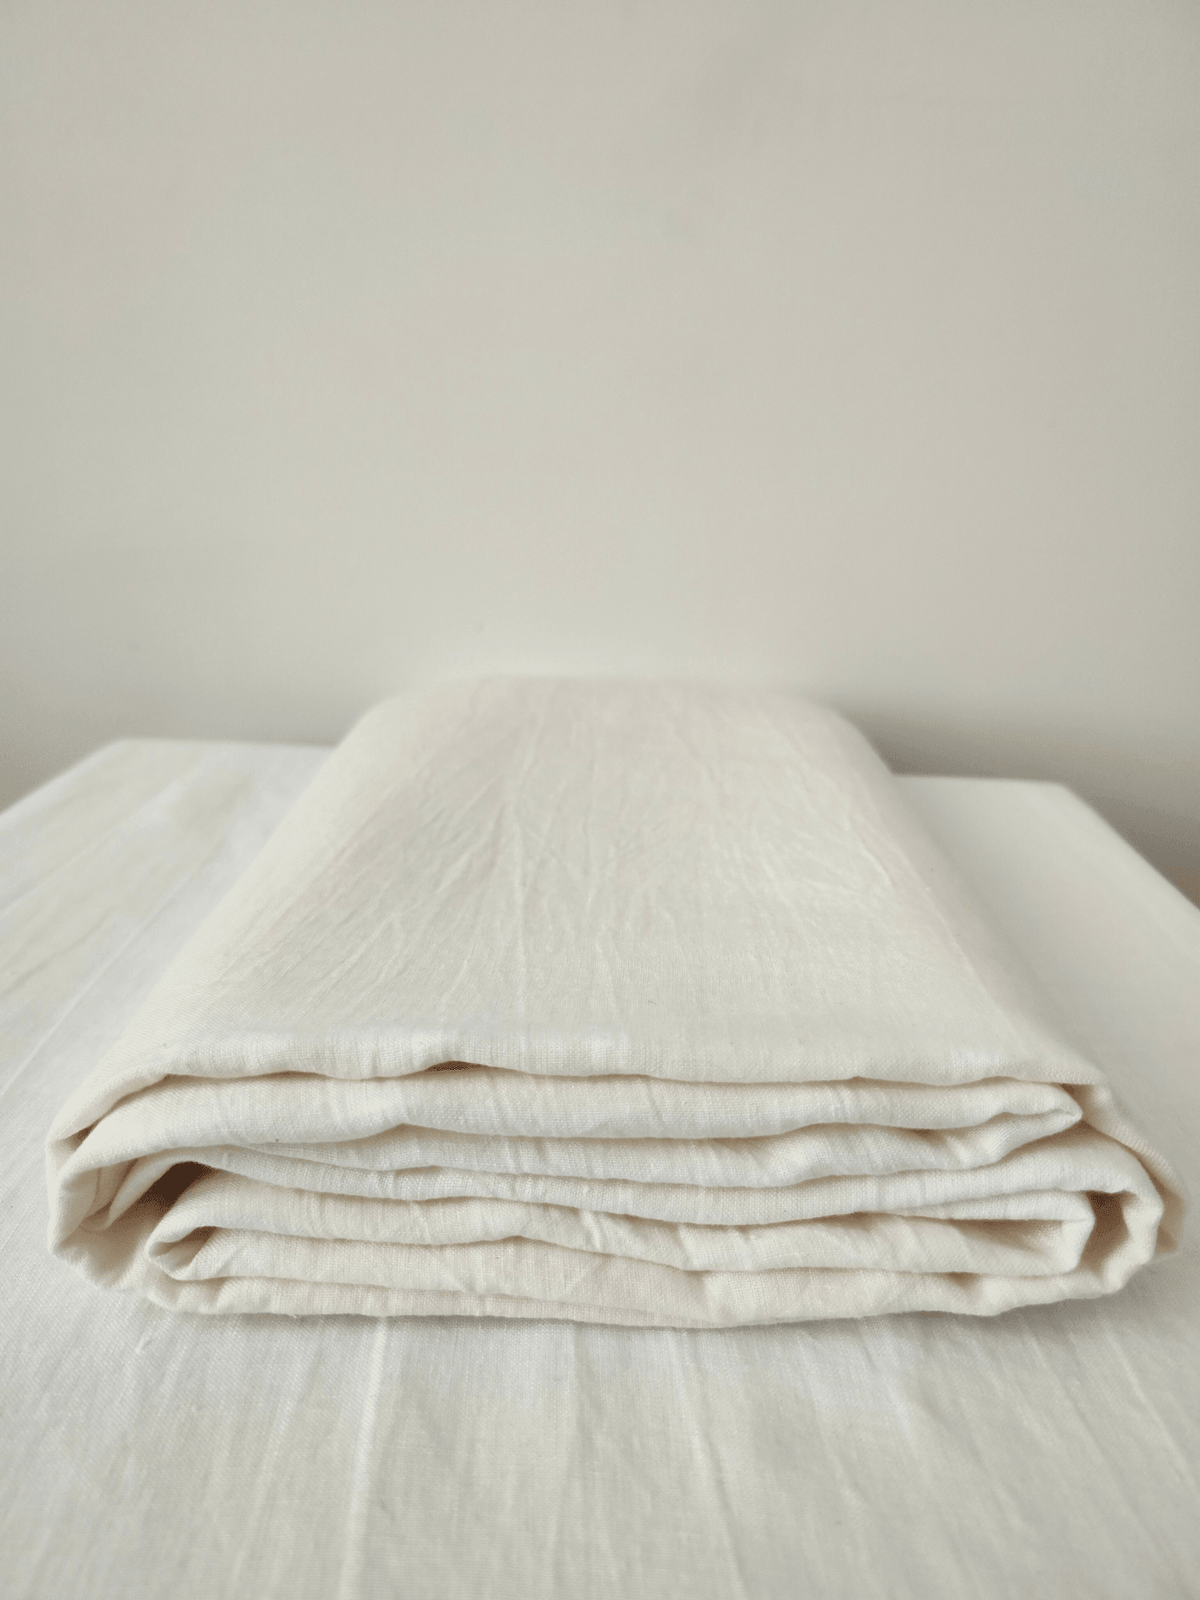 Creame White Soft Linen Sheet - Bedroom, Linen sheet - FlaxLin Eco Textiles